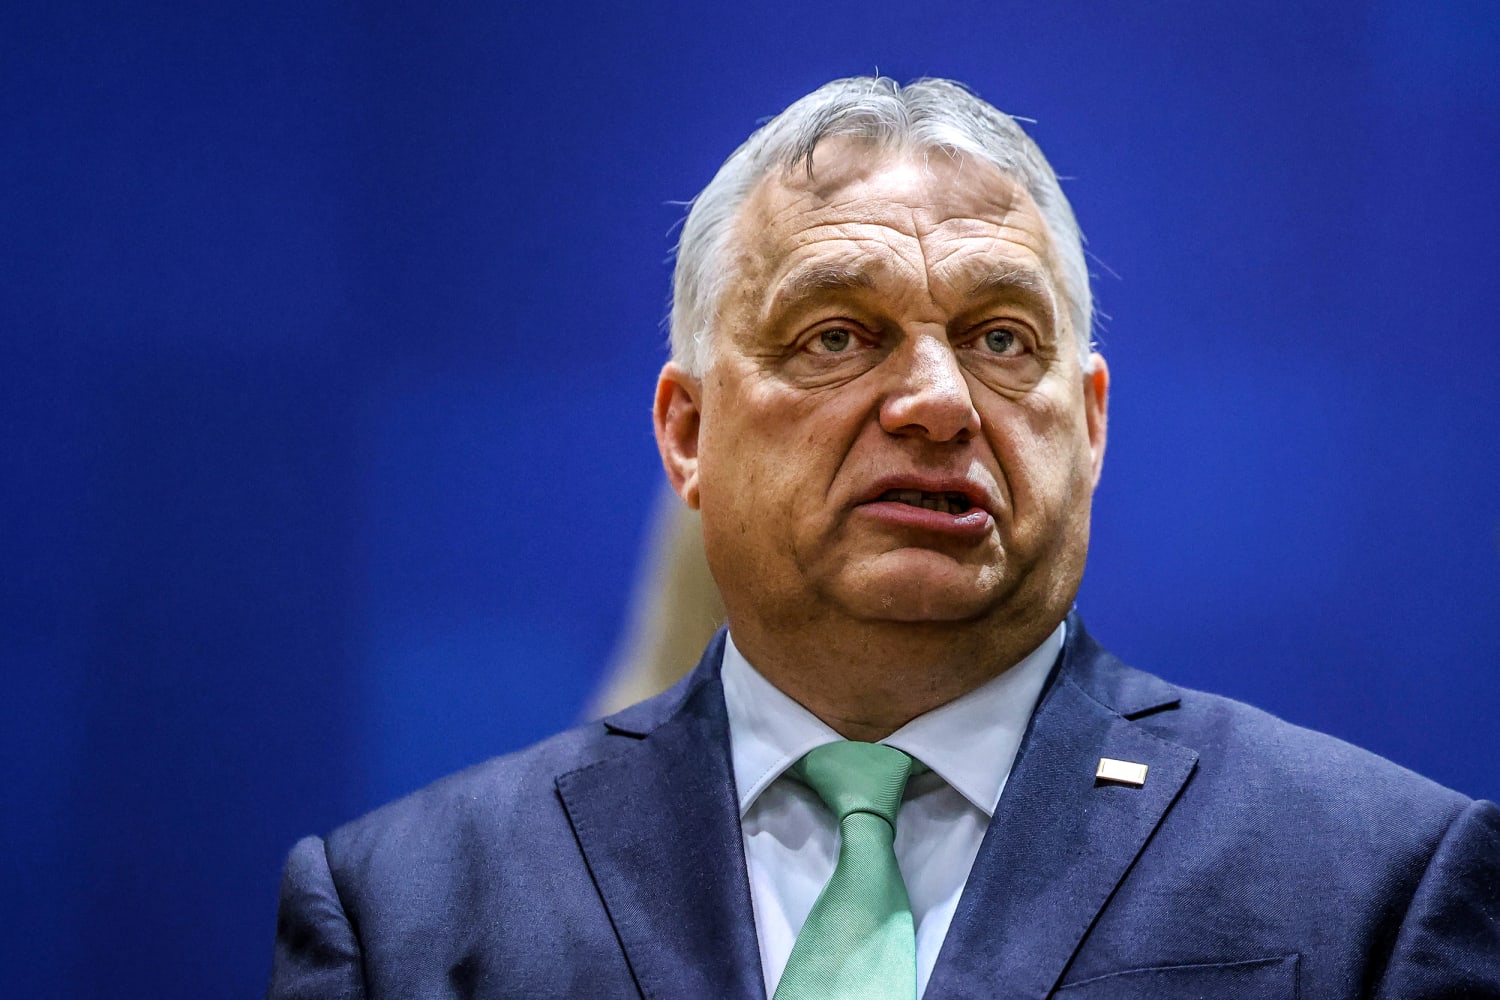 В просочившихся документах говорится, что премьер-министр Венгрии назвал США главным противником.